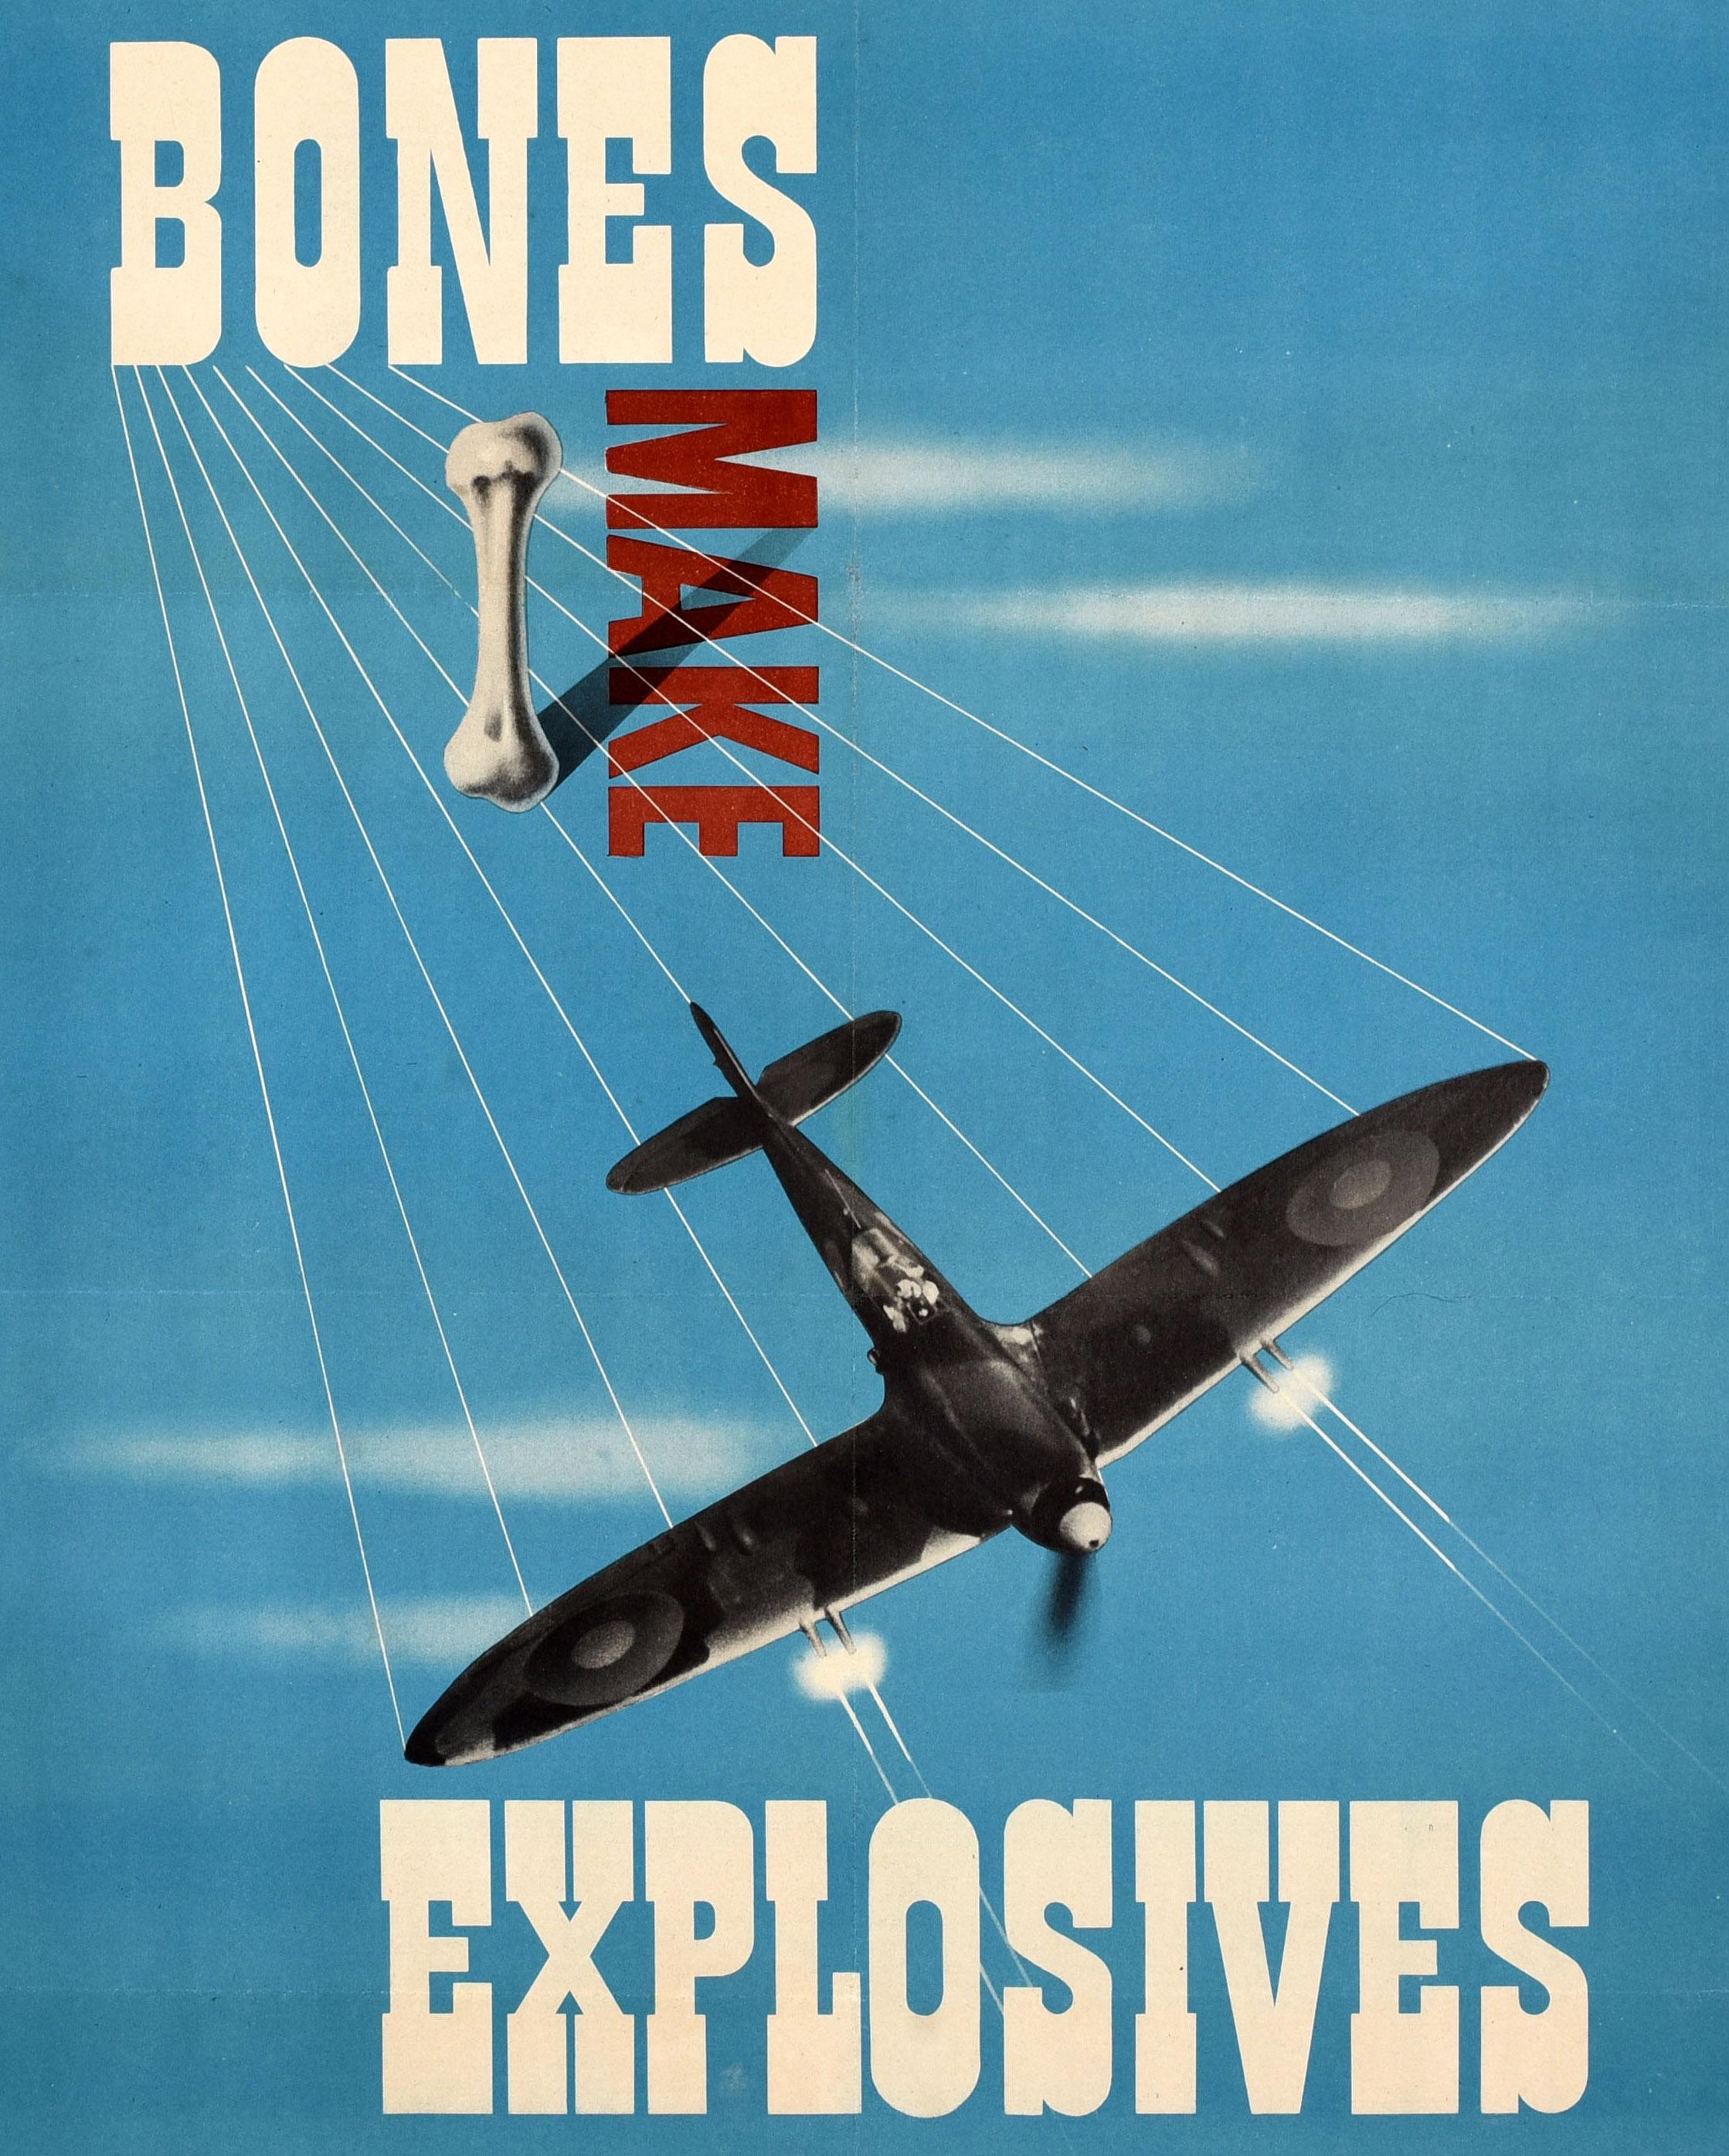 Affiche originale de recyclage du front intérieur de la Seconde Guerre mondiale - Bones Make Explosives Put Out All Bones For Salvage - présentant un superbe graphisme moderniste de Reginald Mount (1906-1979) d'un avion spitfire de la Royal Air